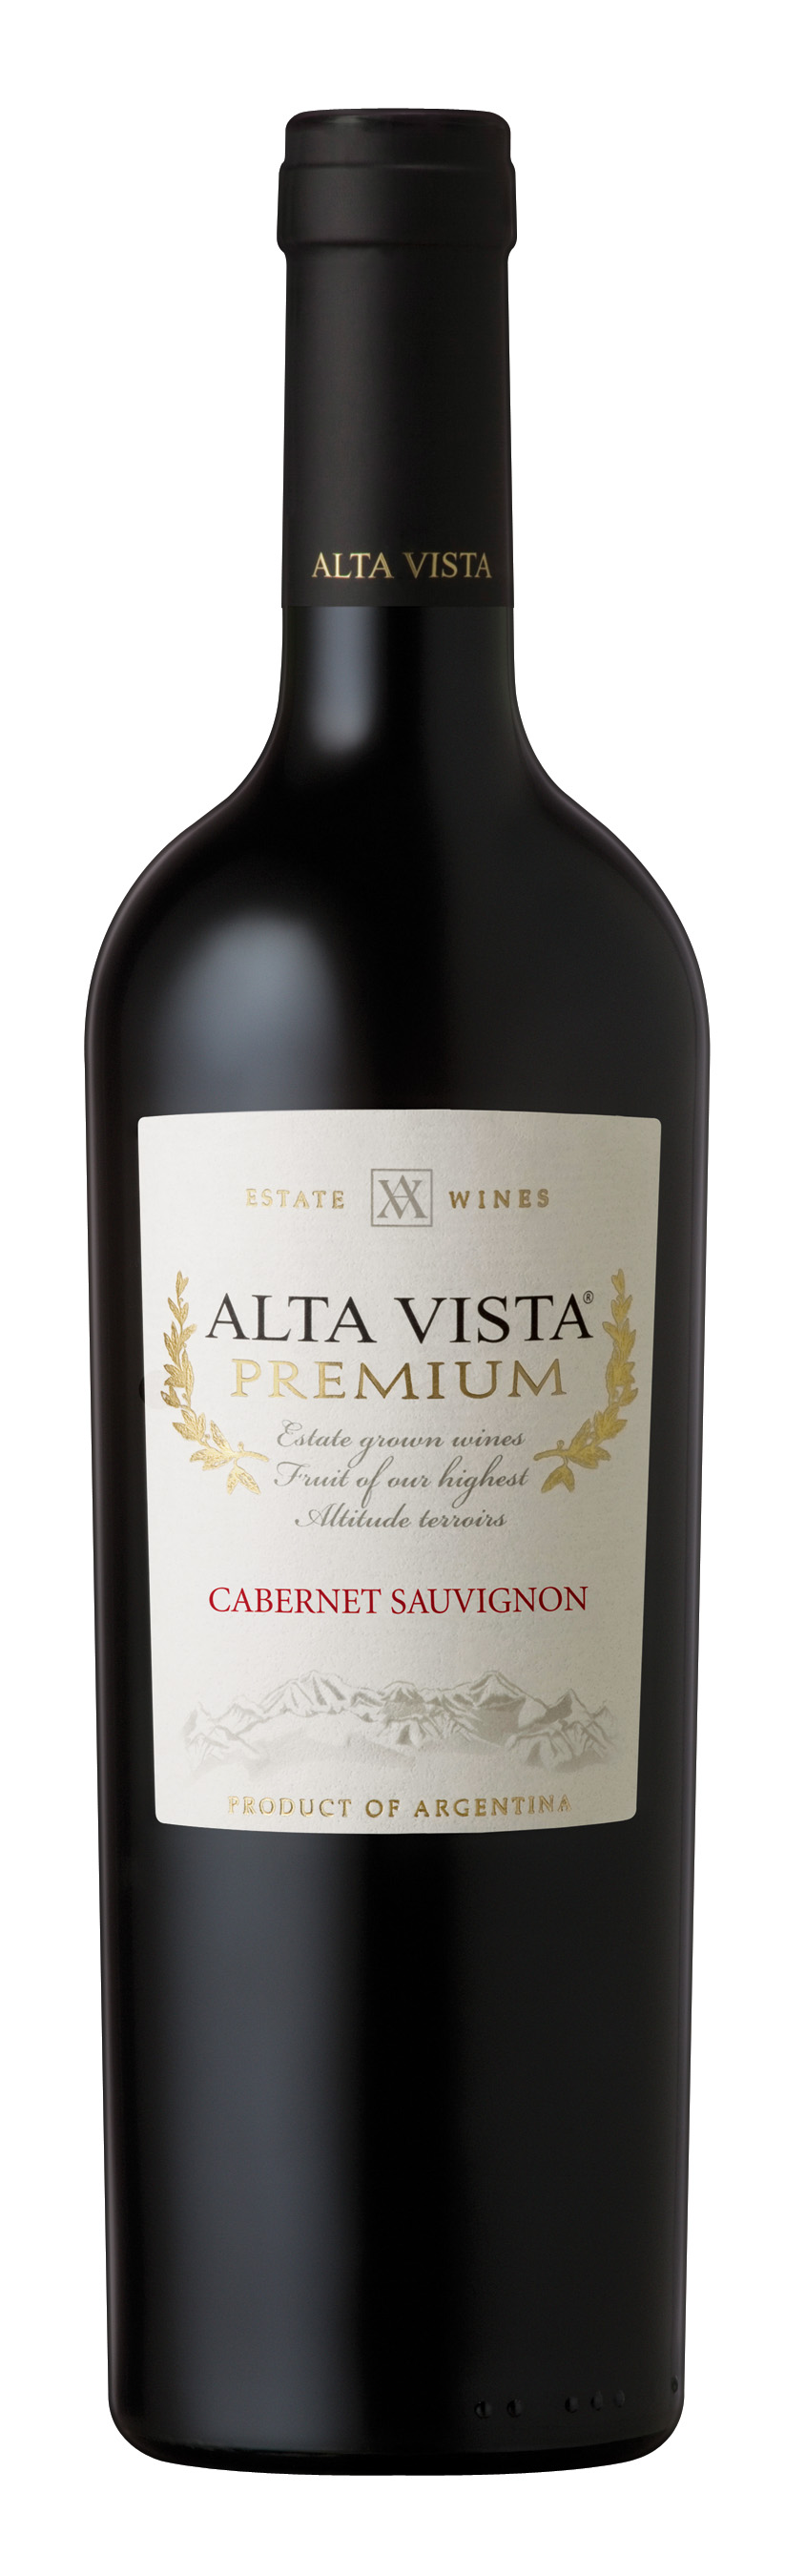 Altavista Premium Cabernet